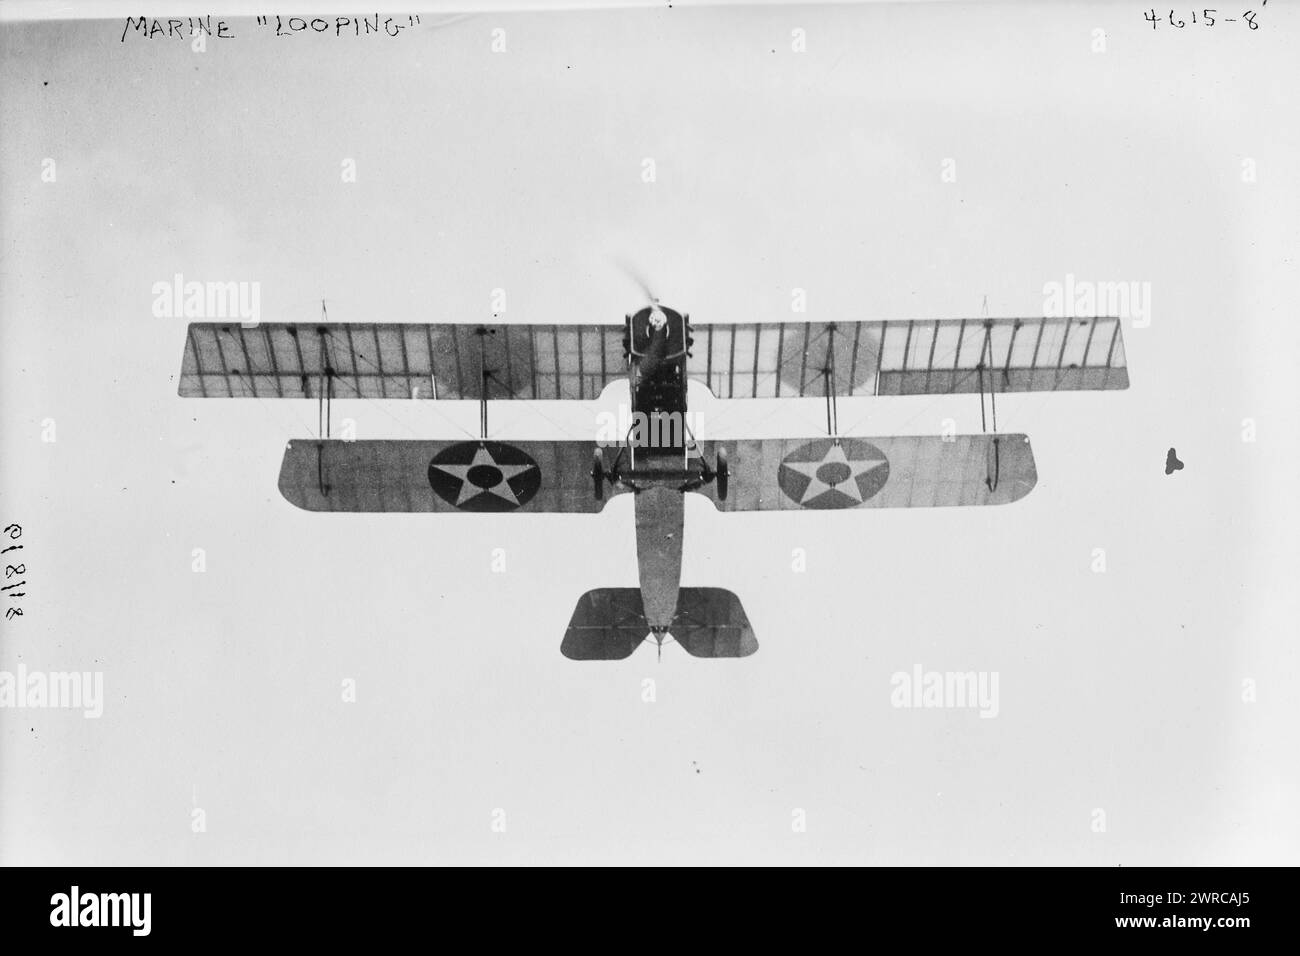 Marine 'Looping' Flugzeug, Foto zeigt ein Flugzeug, das von einem Marine im Marine Flying Field, Miami, Florida während des Ersten Weltkrieges geflogen wurde, 1918 Juni 8, Weltkrieg, 1914-1918, Glass negative, 1 negativ: Glas Stockfoto